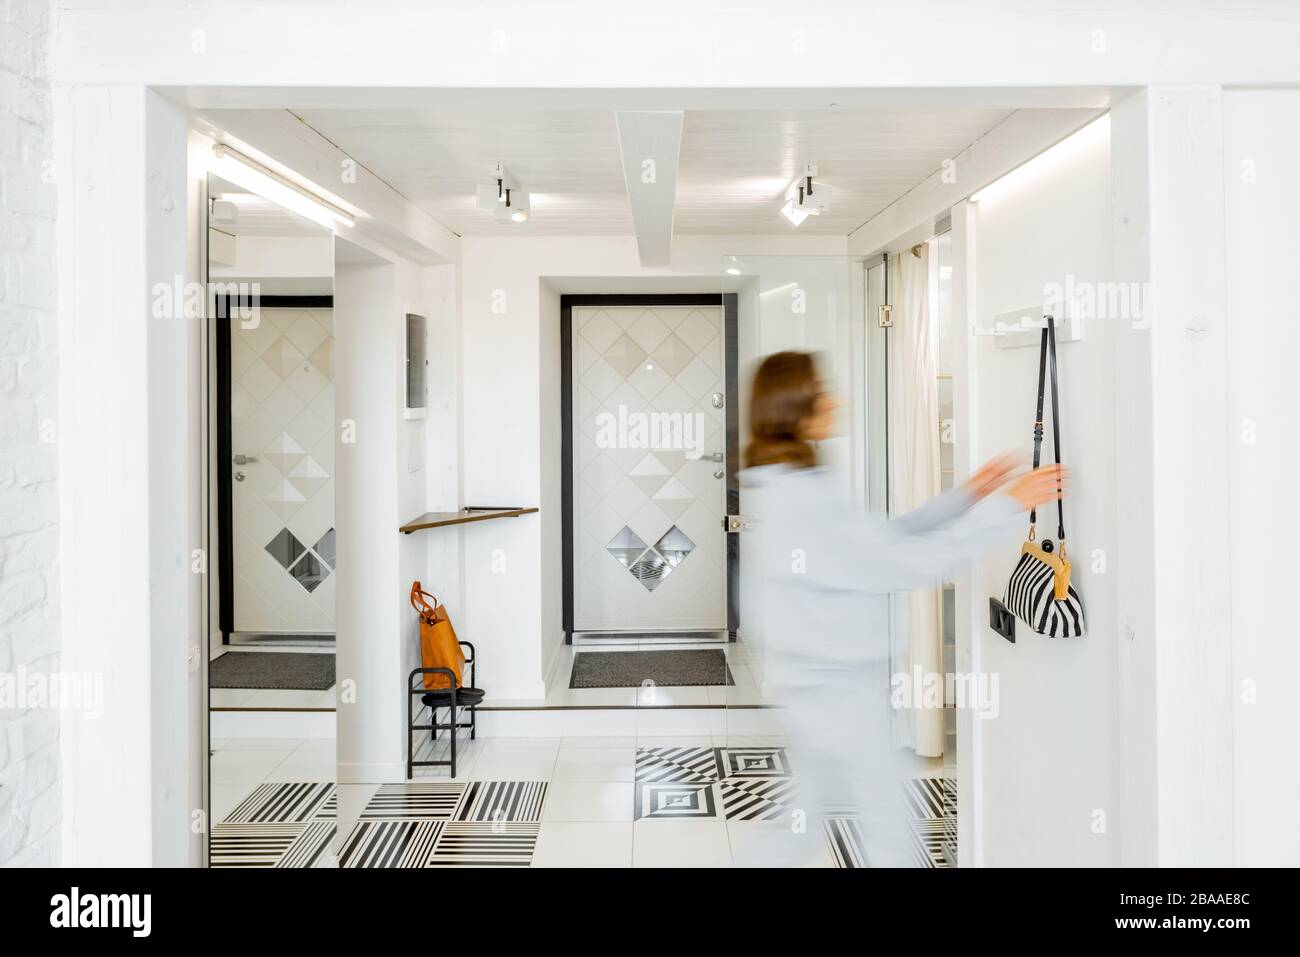 Vue intérieure du couloir lumineux et moderne de l'appartement avec une figurine humaine floue en mouvement Banque D'Images